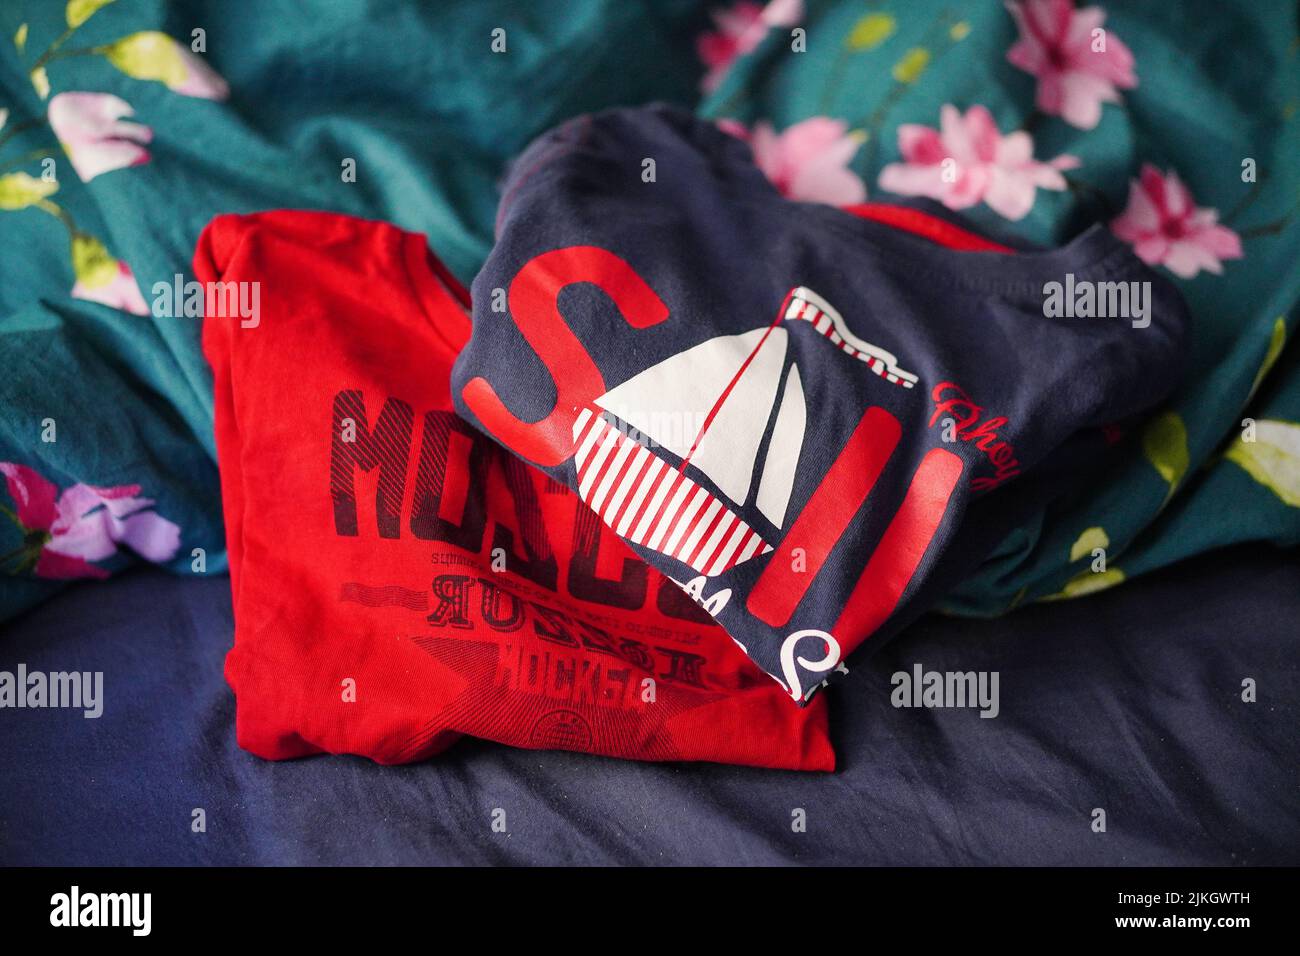 Ein rot-blaues Kinderhemd mit dem Text Sail and Moscow, das auf einem Bettlaken mit Blumen liegt Stockfoto